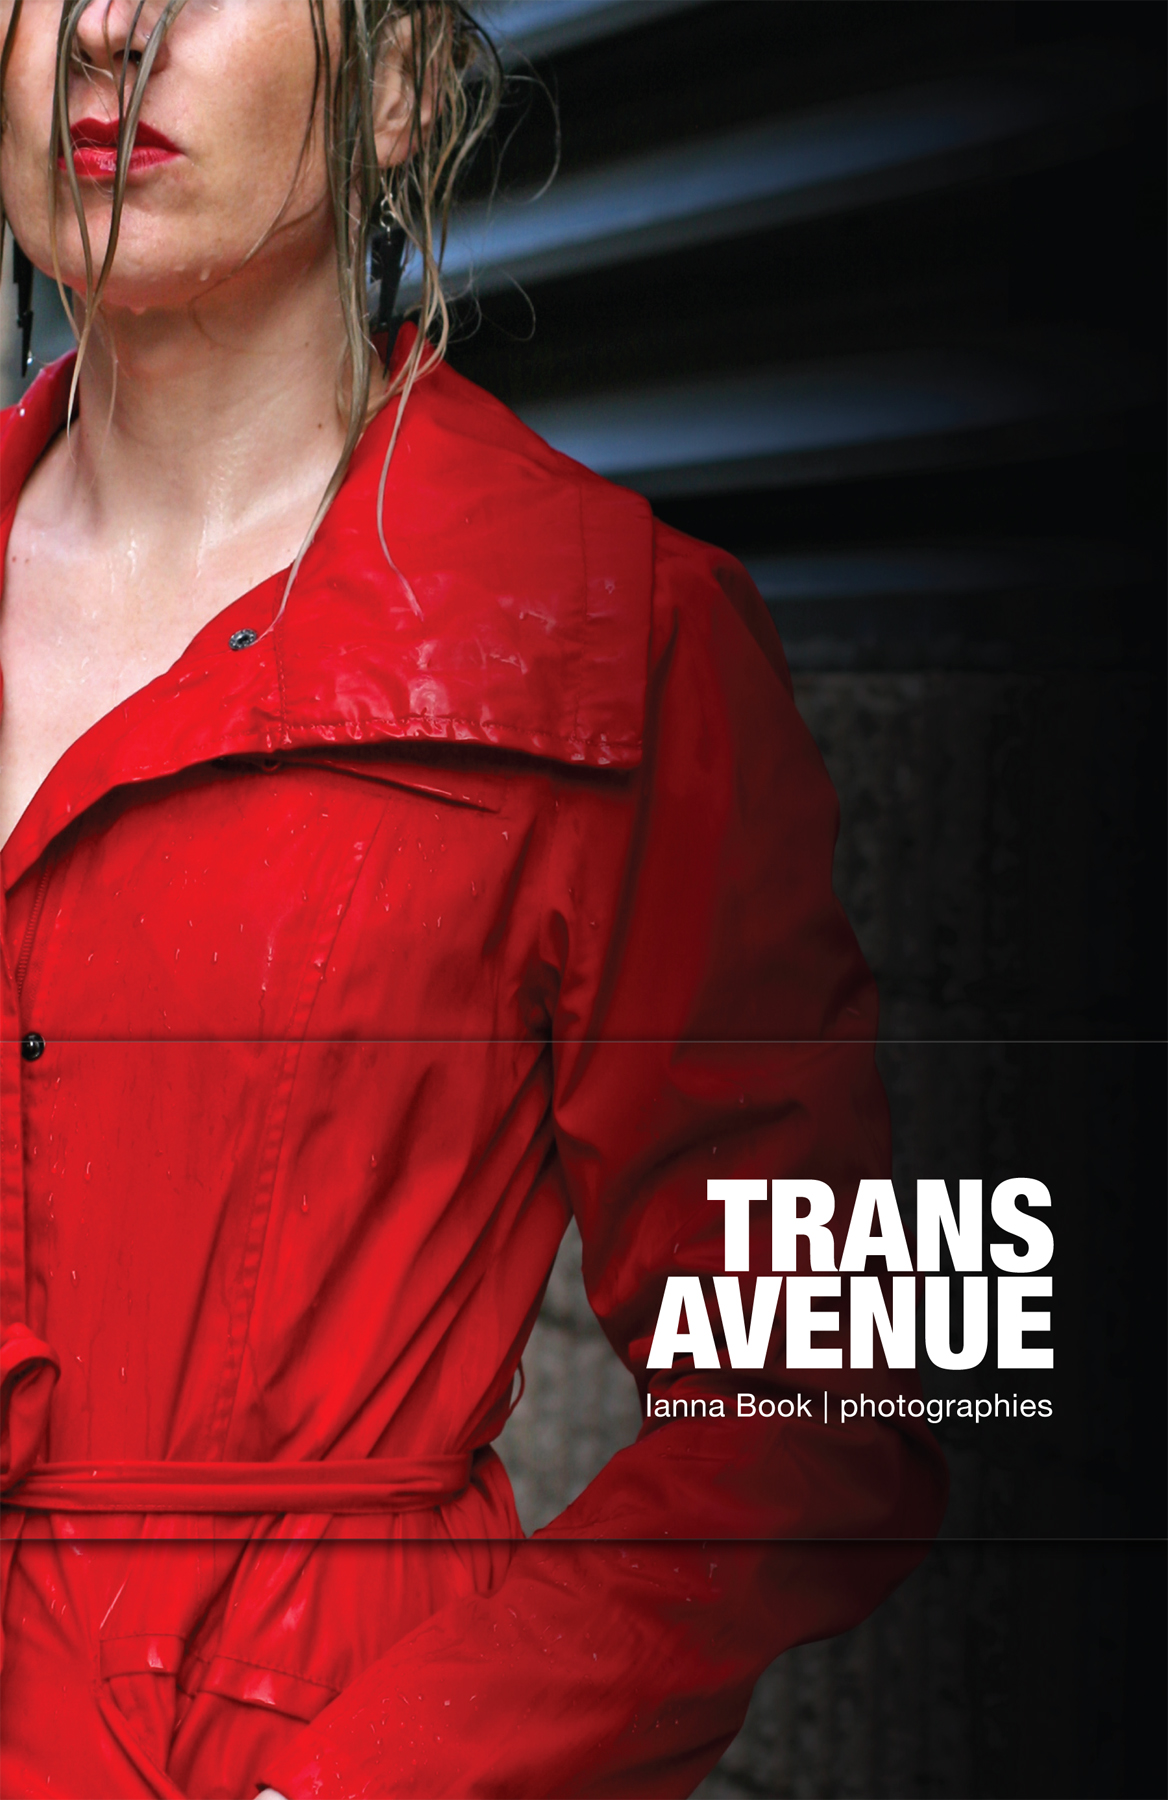 trans avenue_ianna book